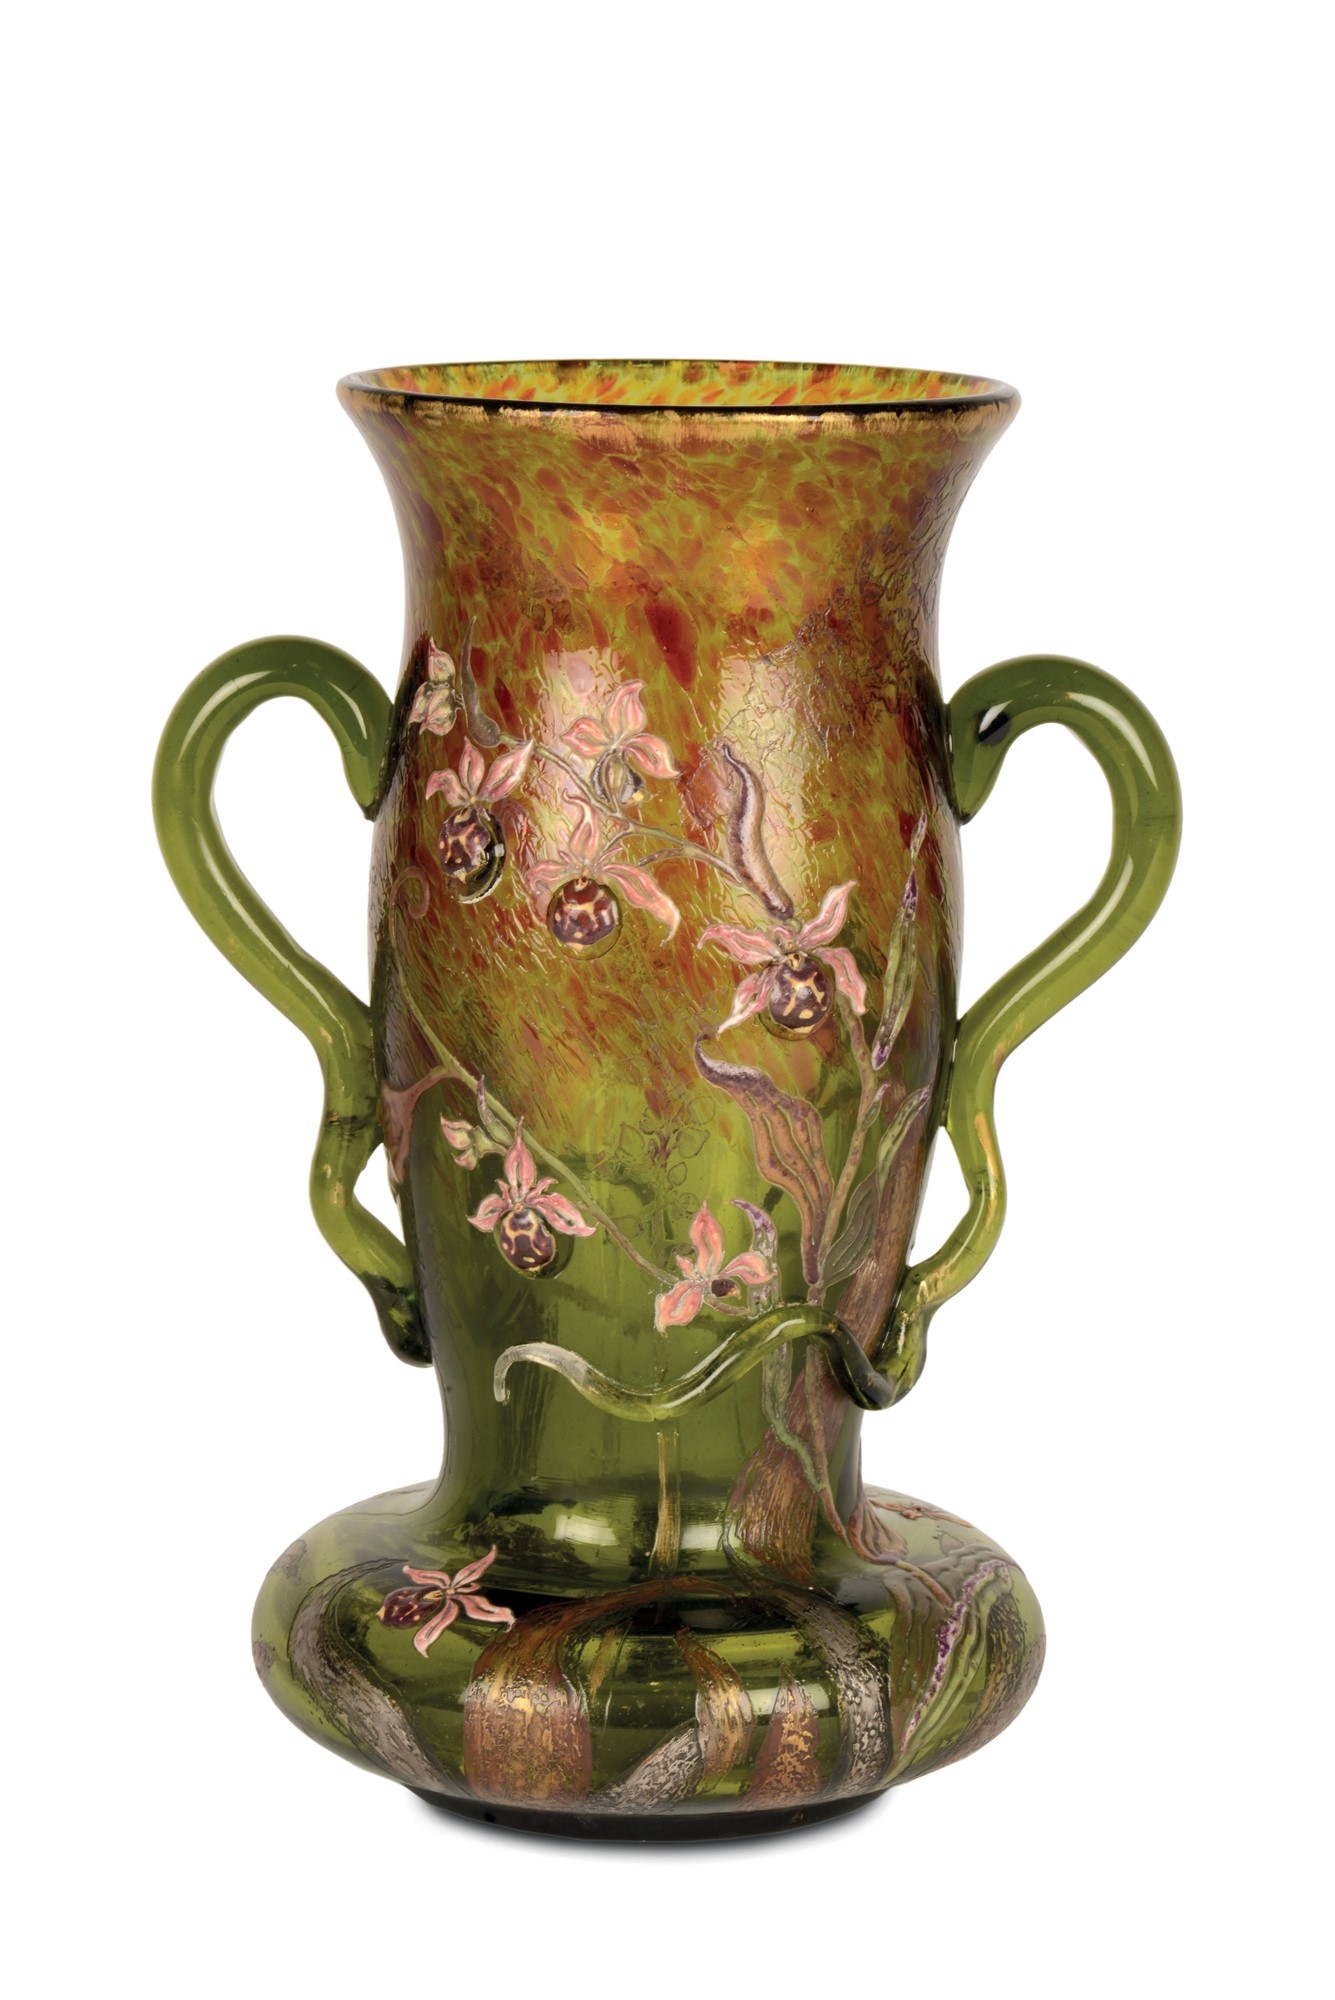 Eccezionale vaso con anse applicate e sagomate a serpente. La decorazione è affidata a motivi floreali eseguiti con l'utilizzo di varie tecniche